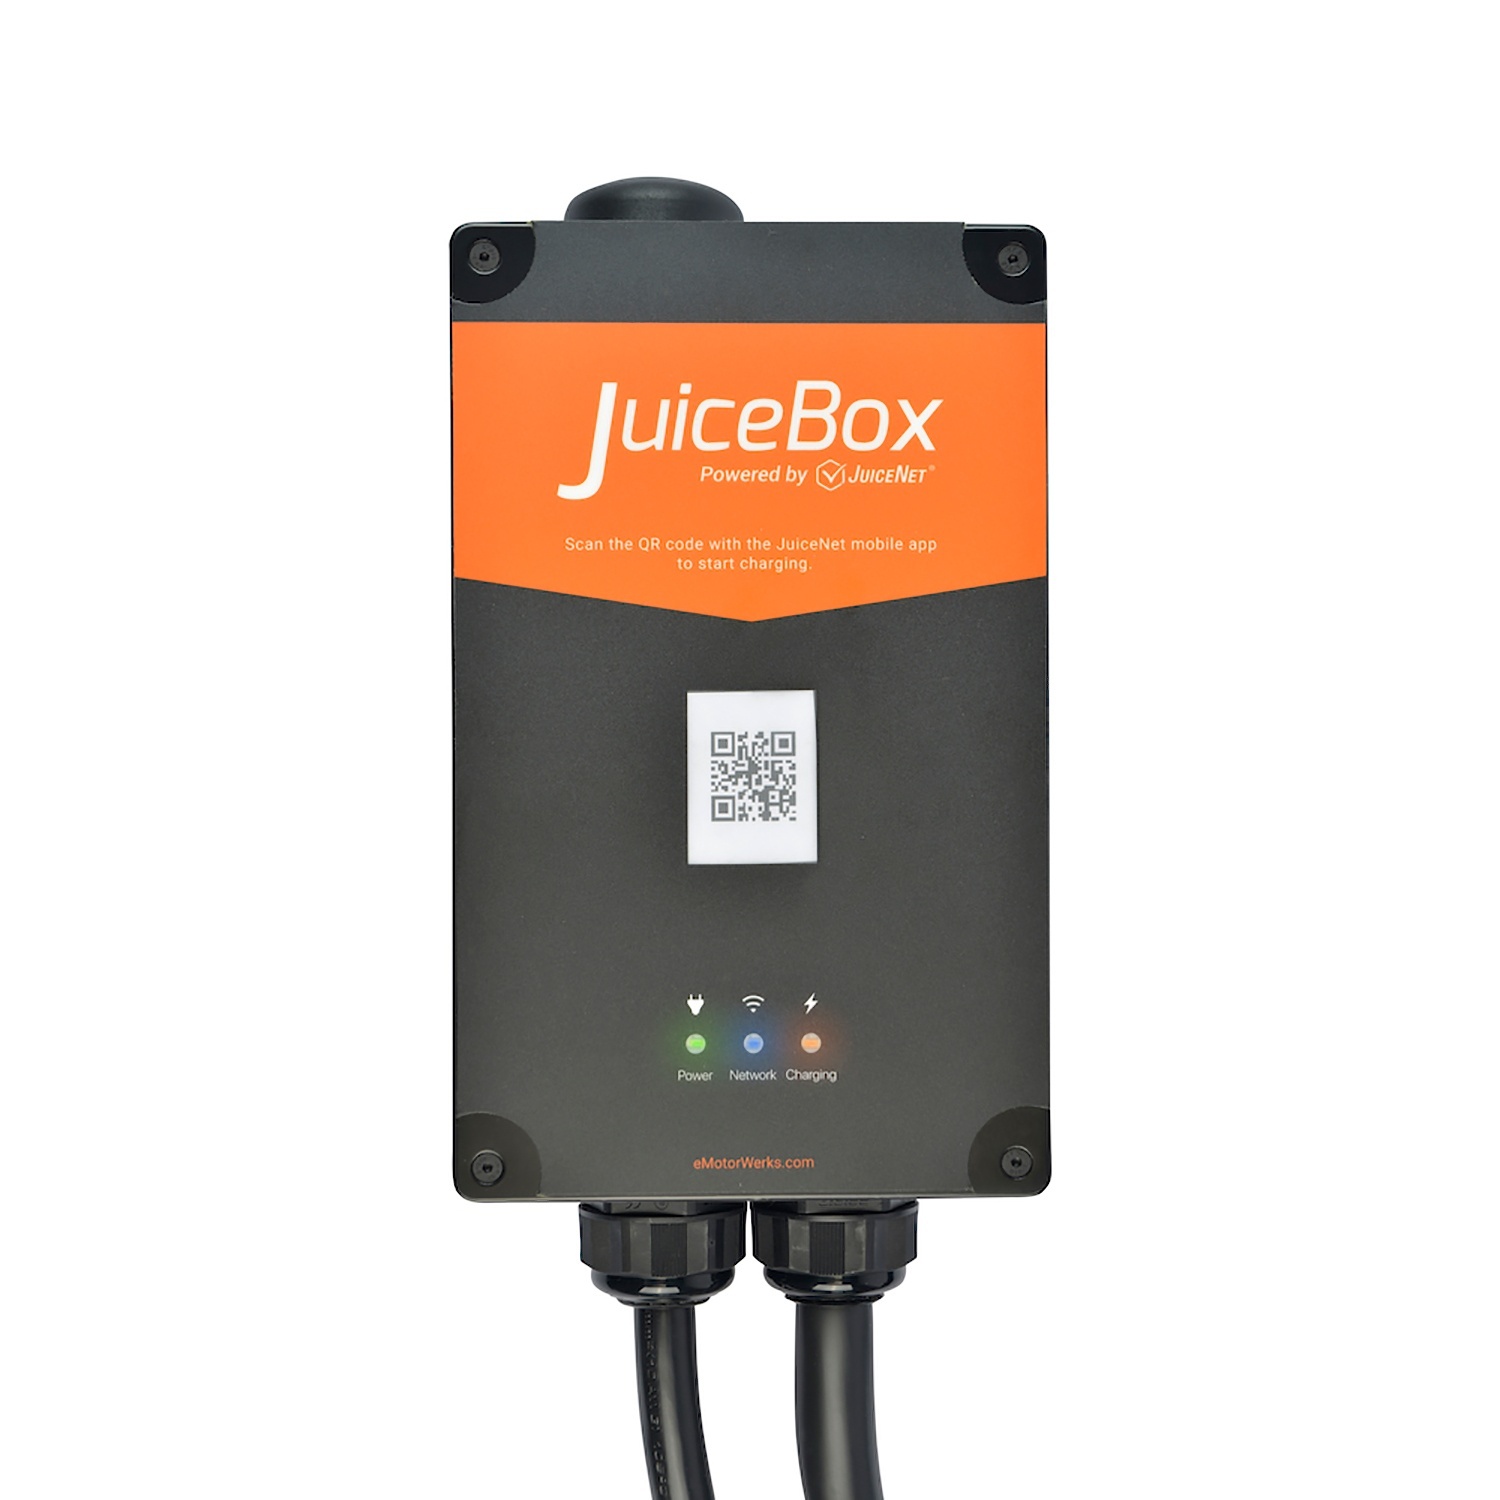 juicebox 32 plug in details